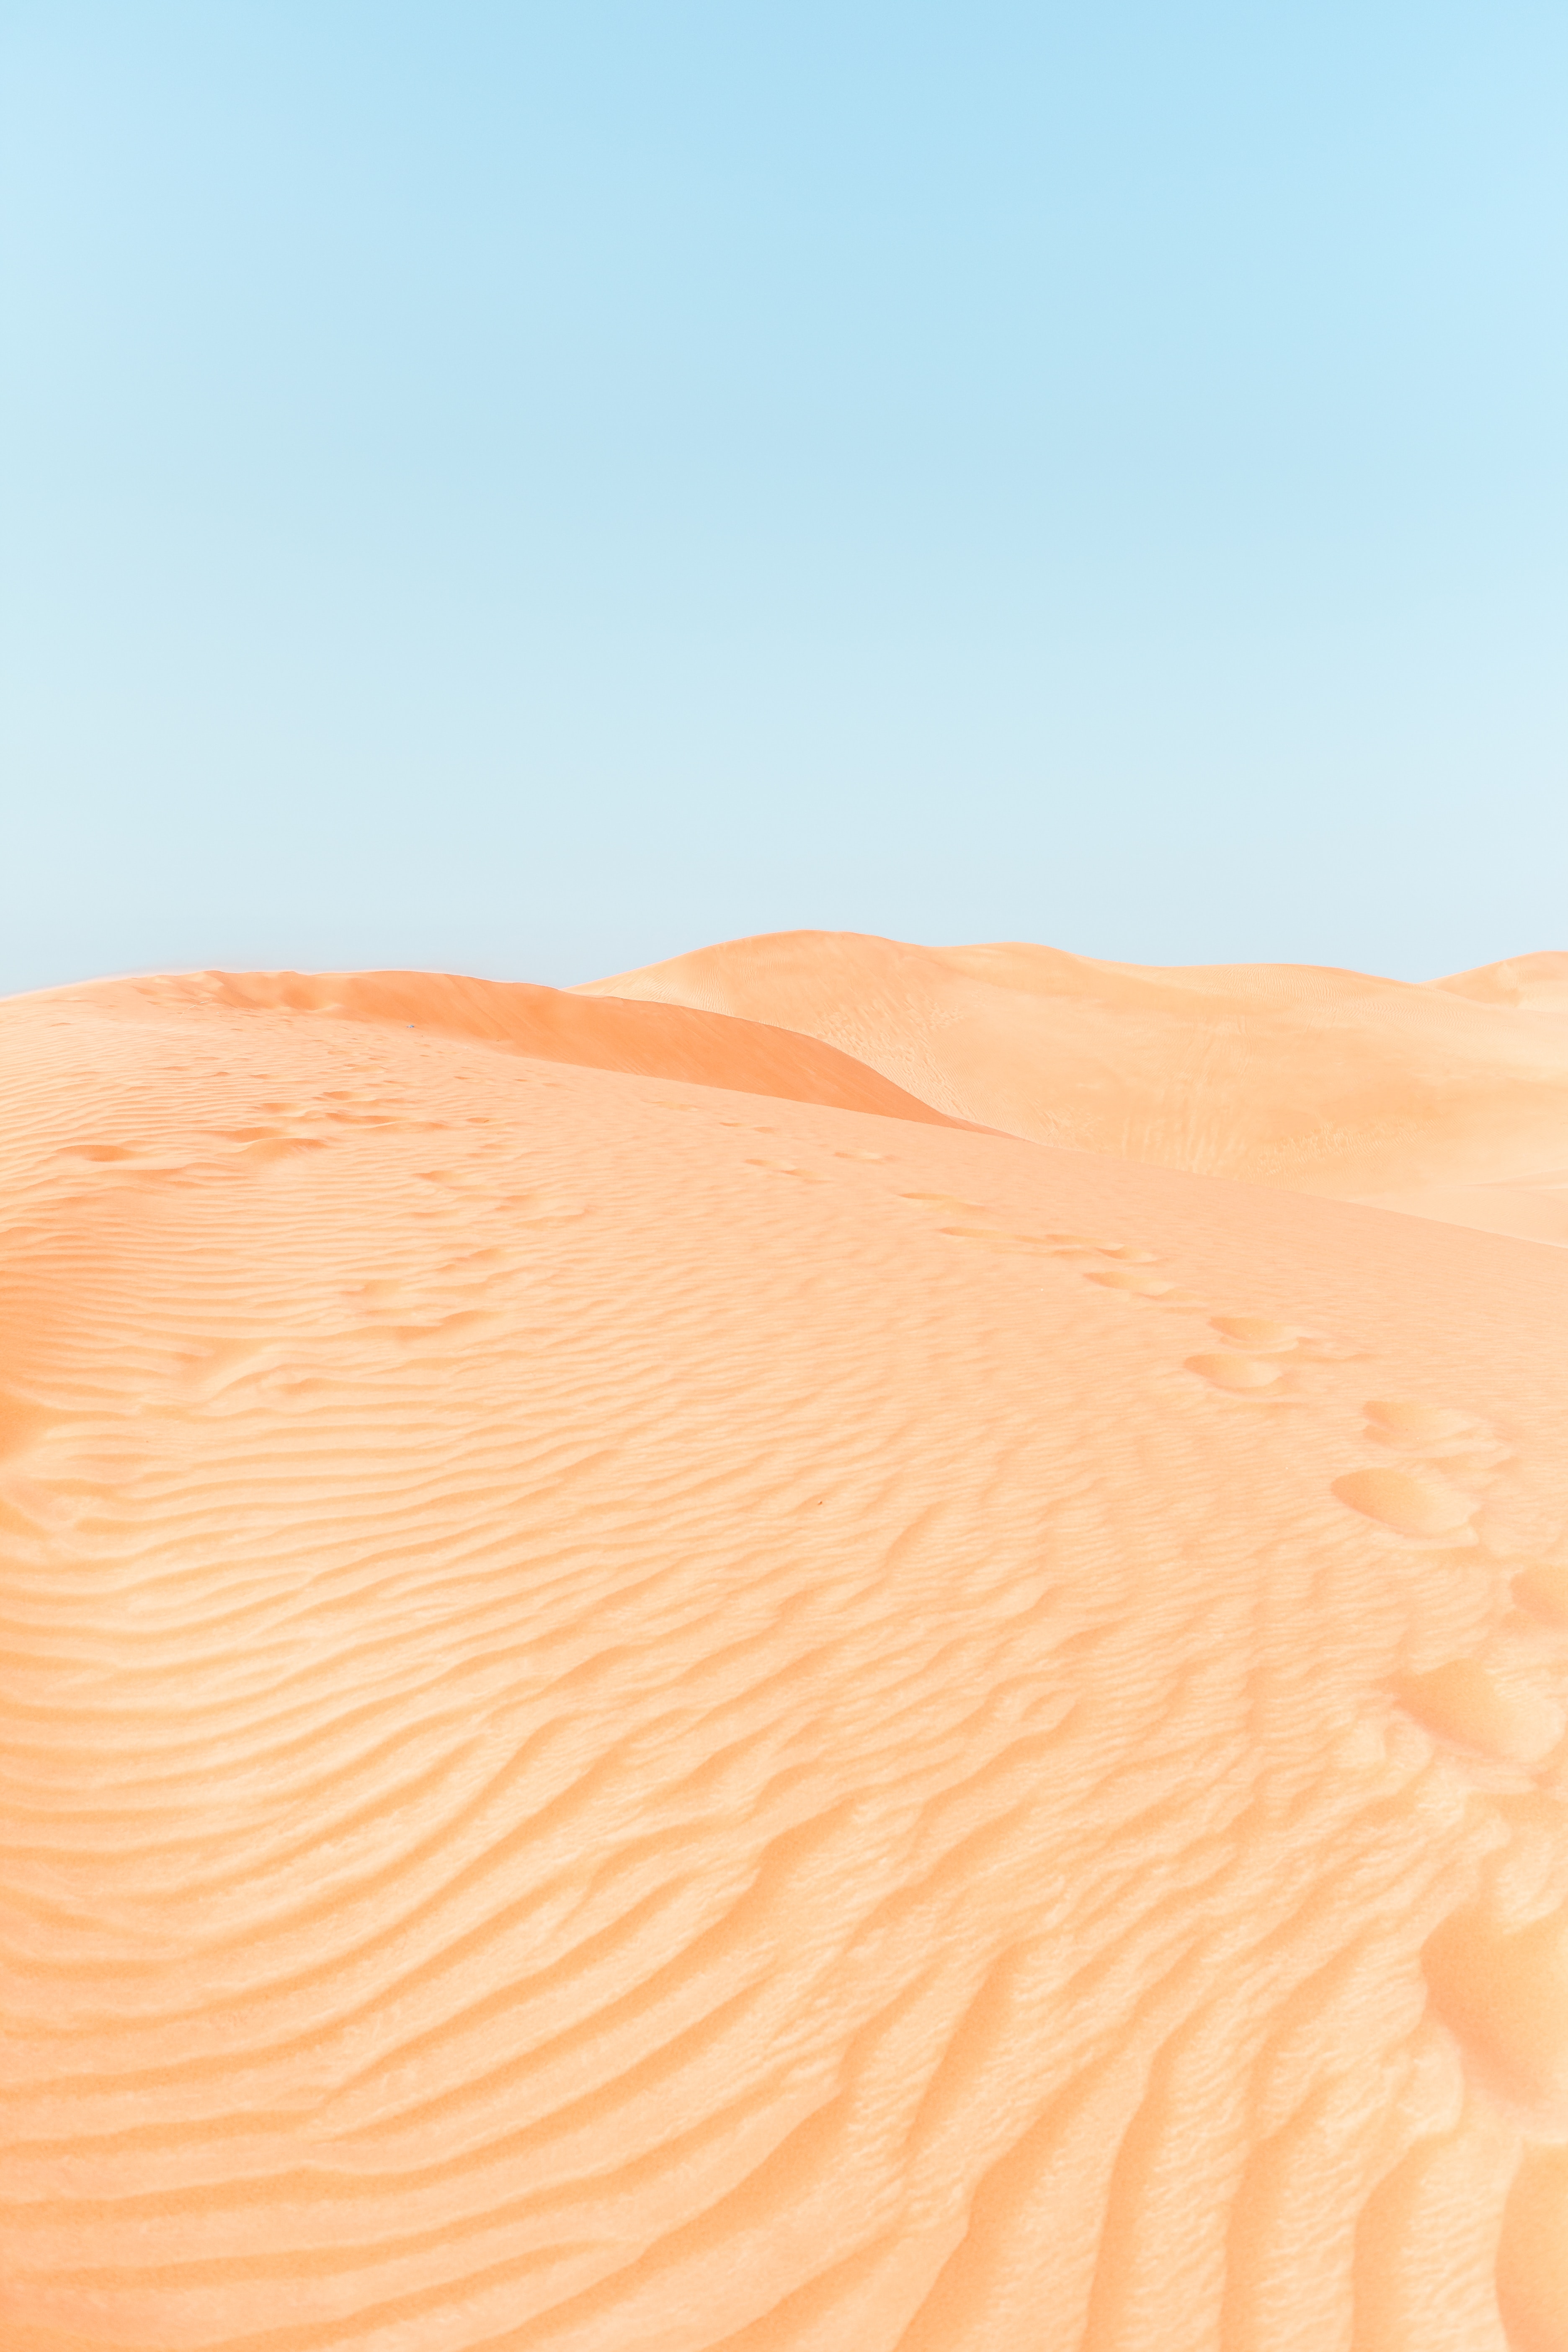 Popular Dunes 4K for smartphone